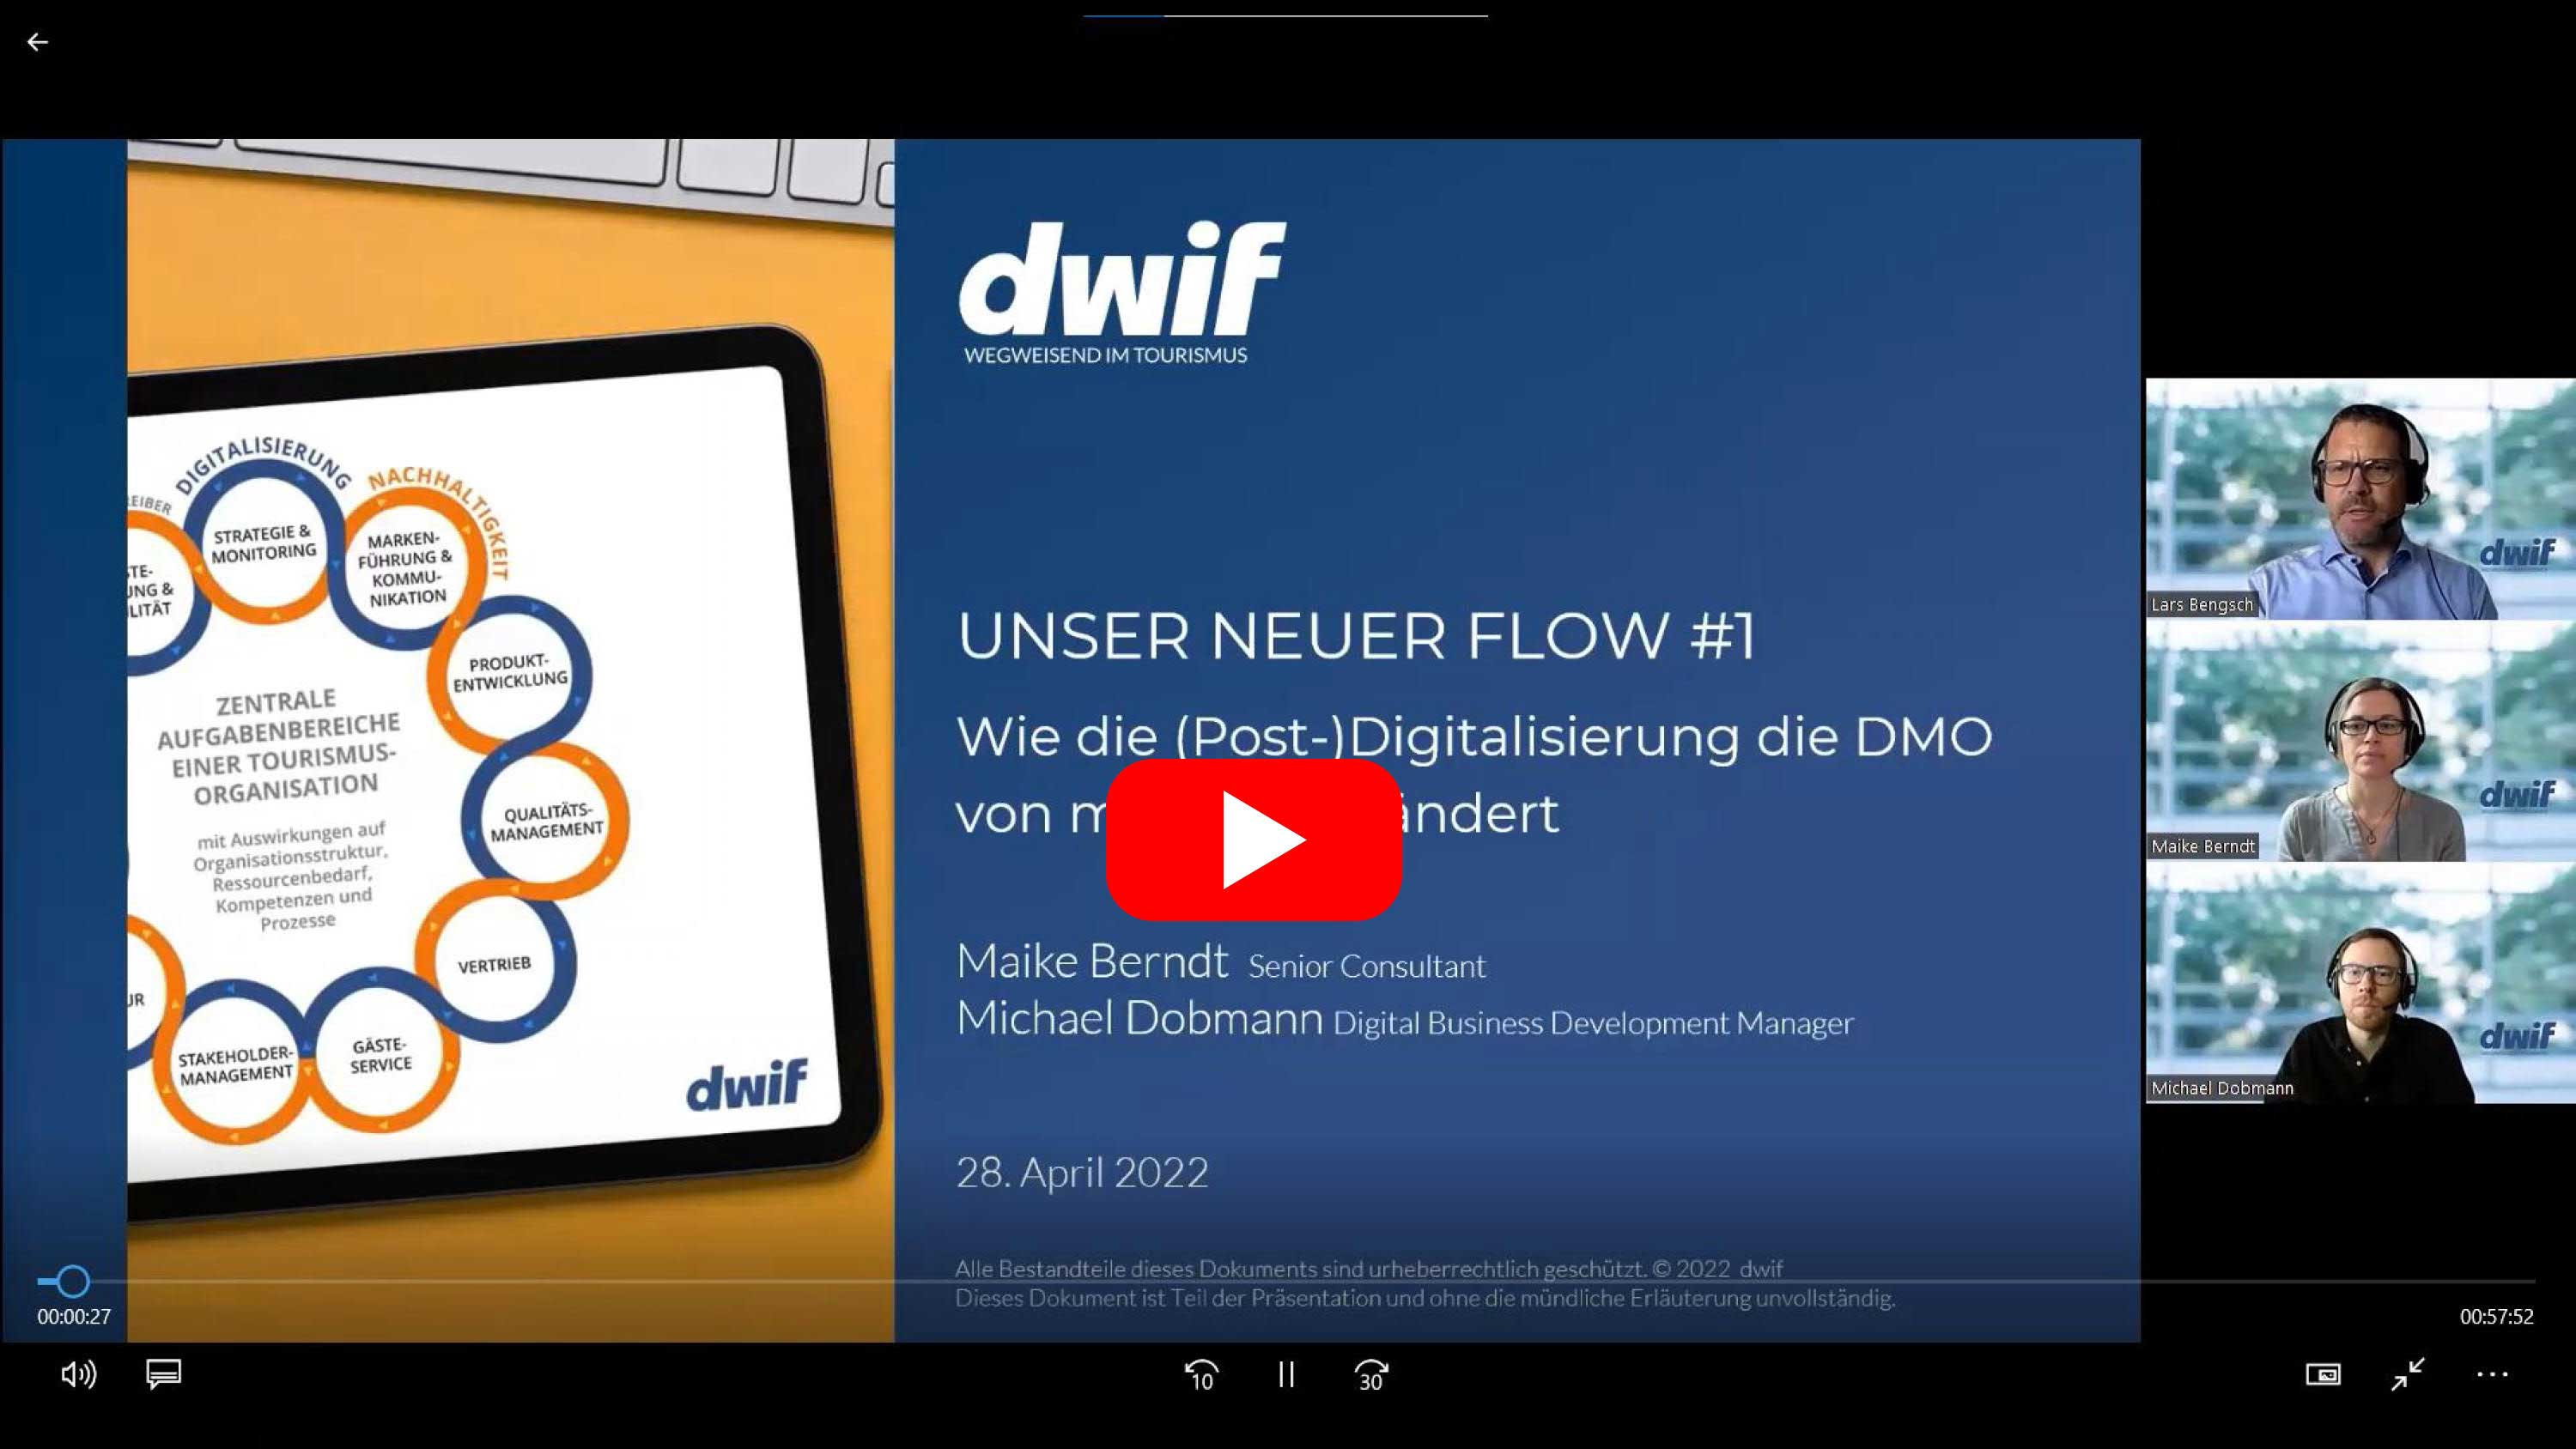 dwif-Impulse: Unser neuer Flow Digitalisierung